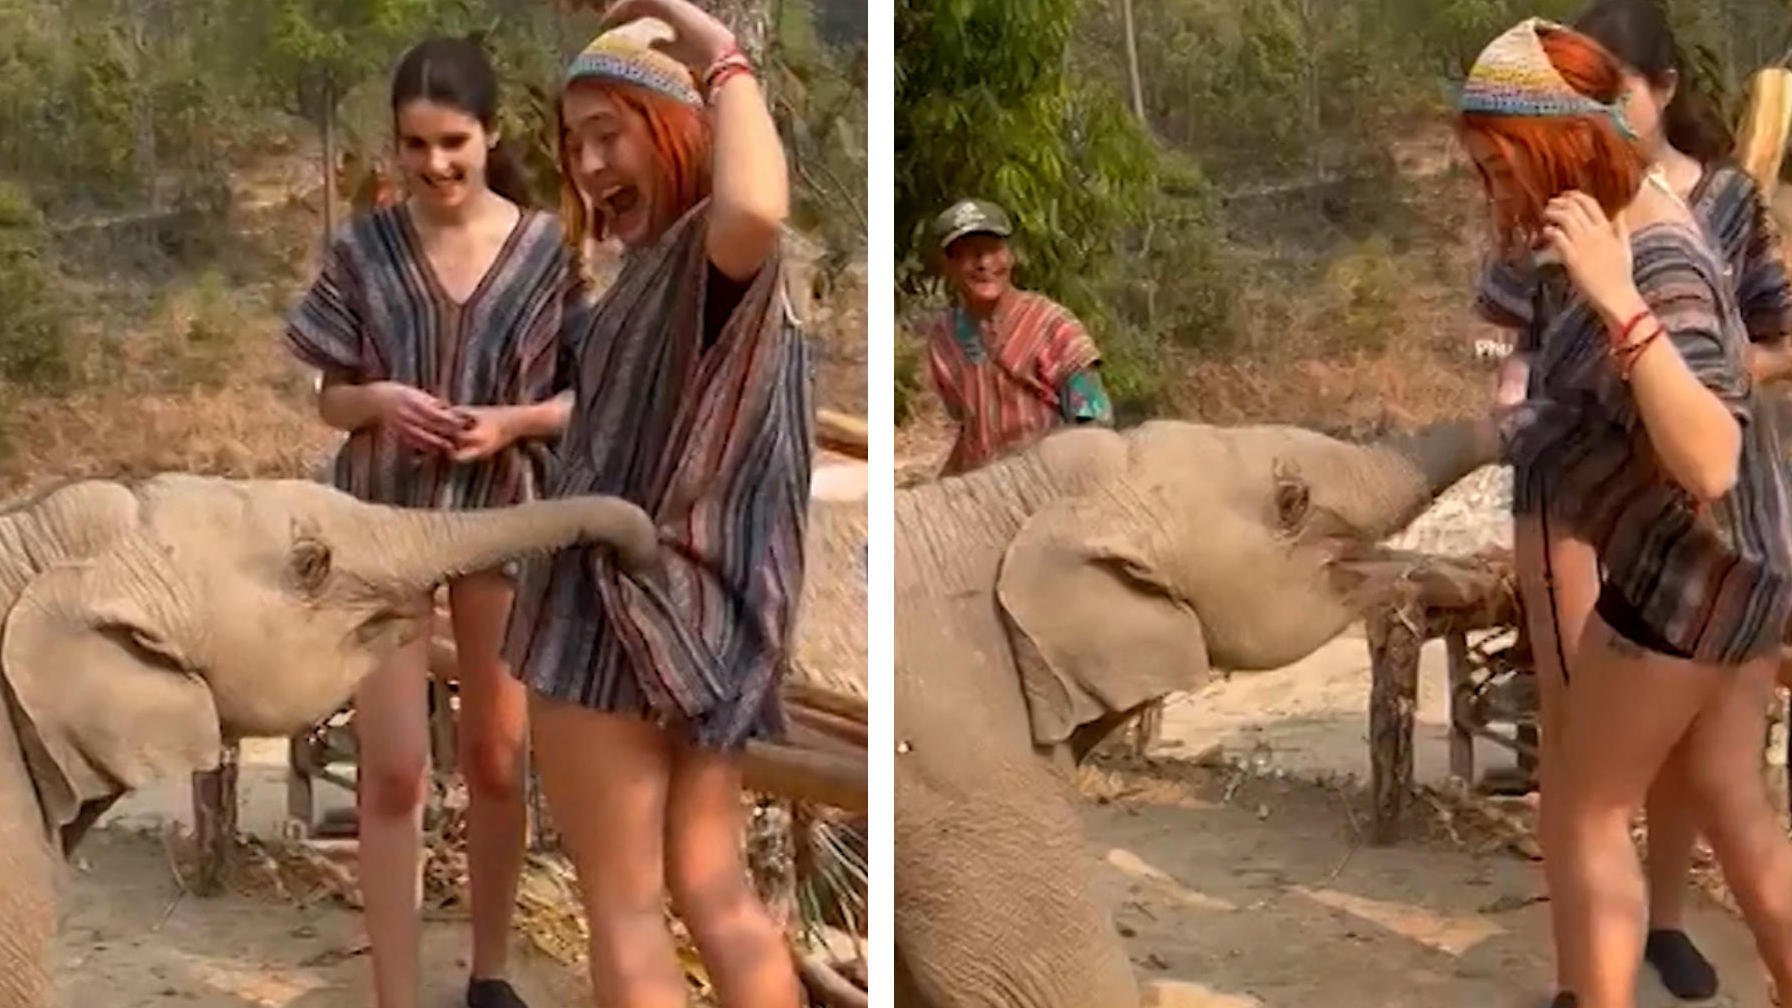 Elefant versucht Touristin auszuziehen Sein Rüssel will zu viel!